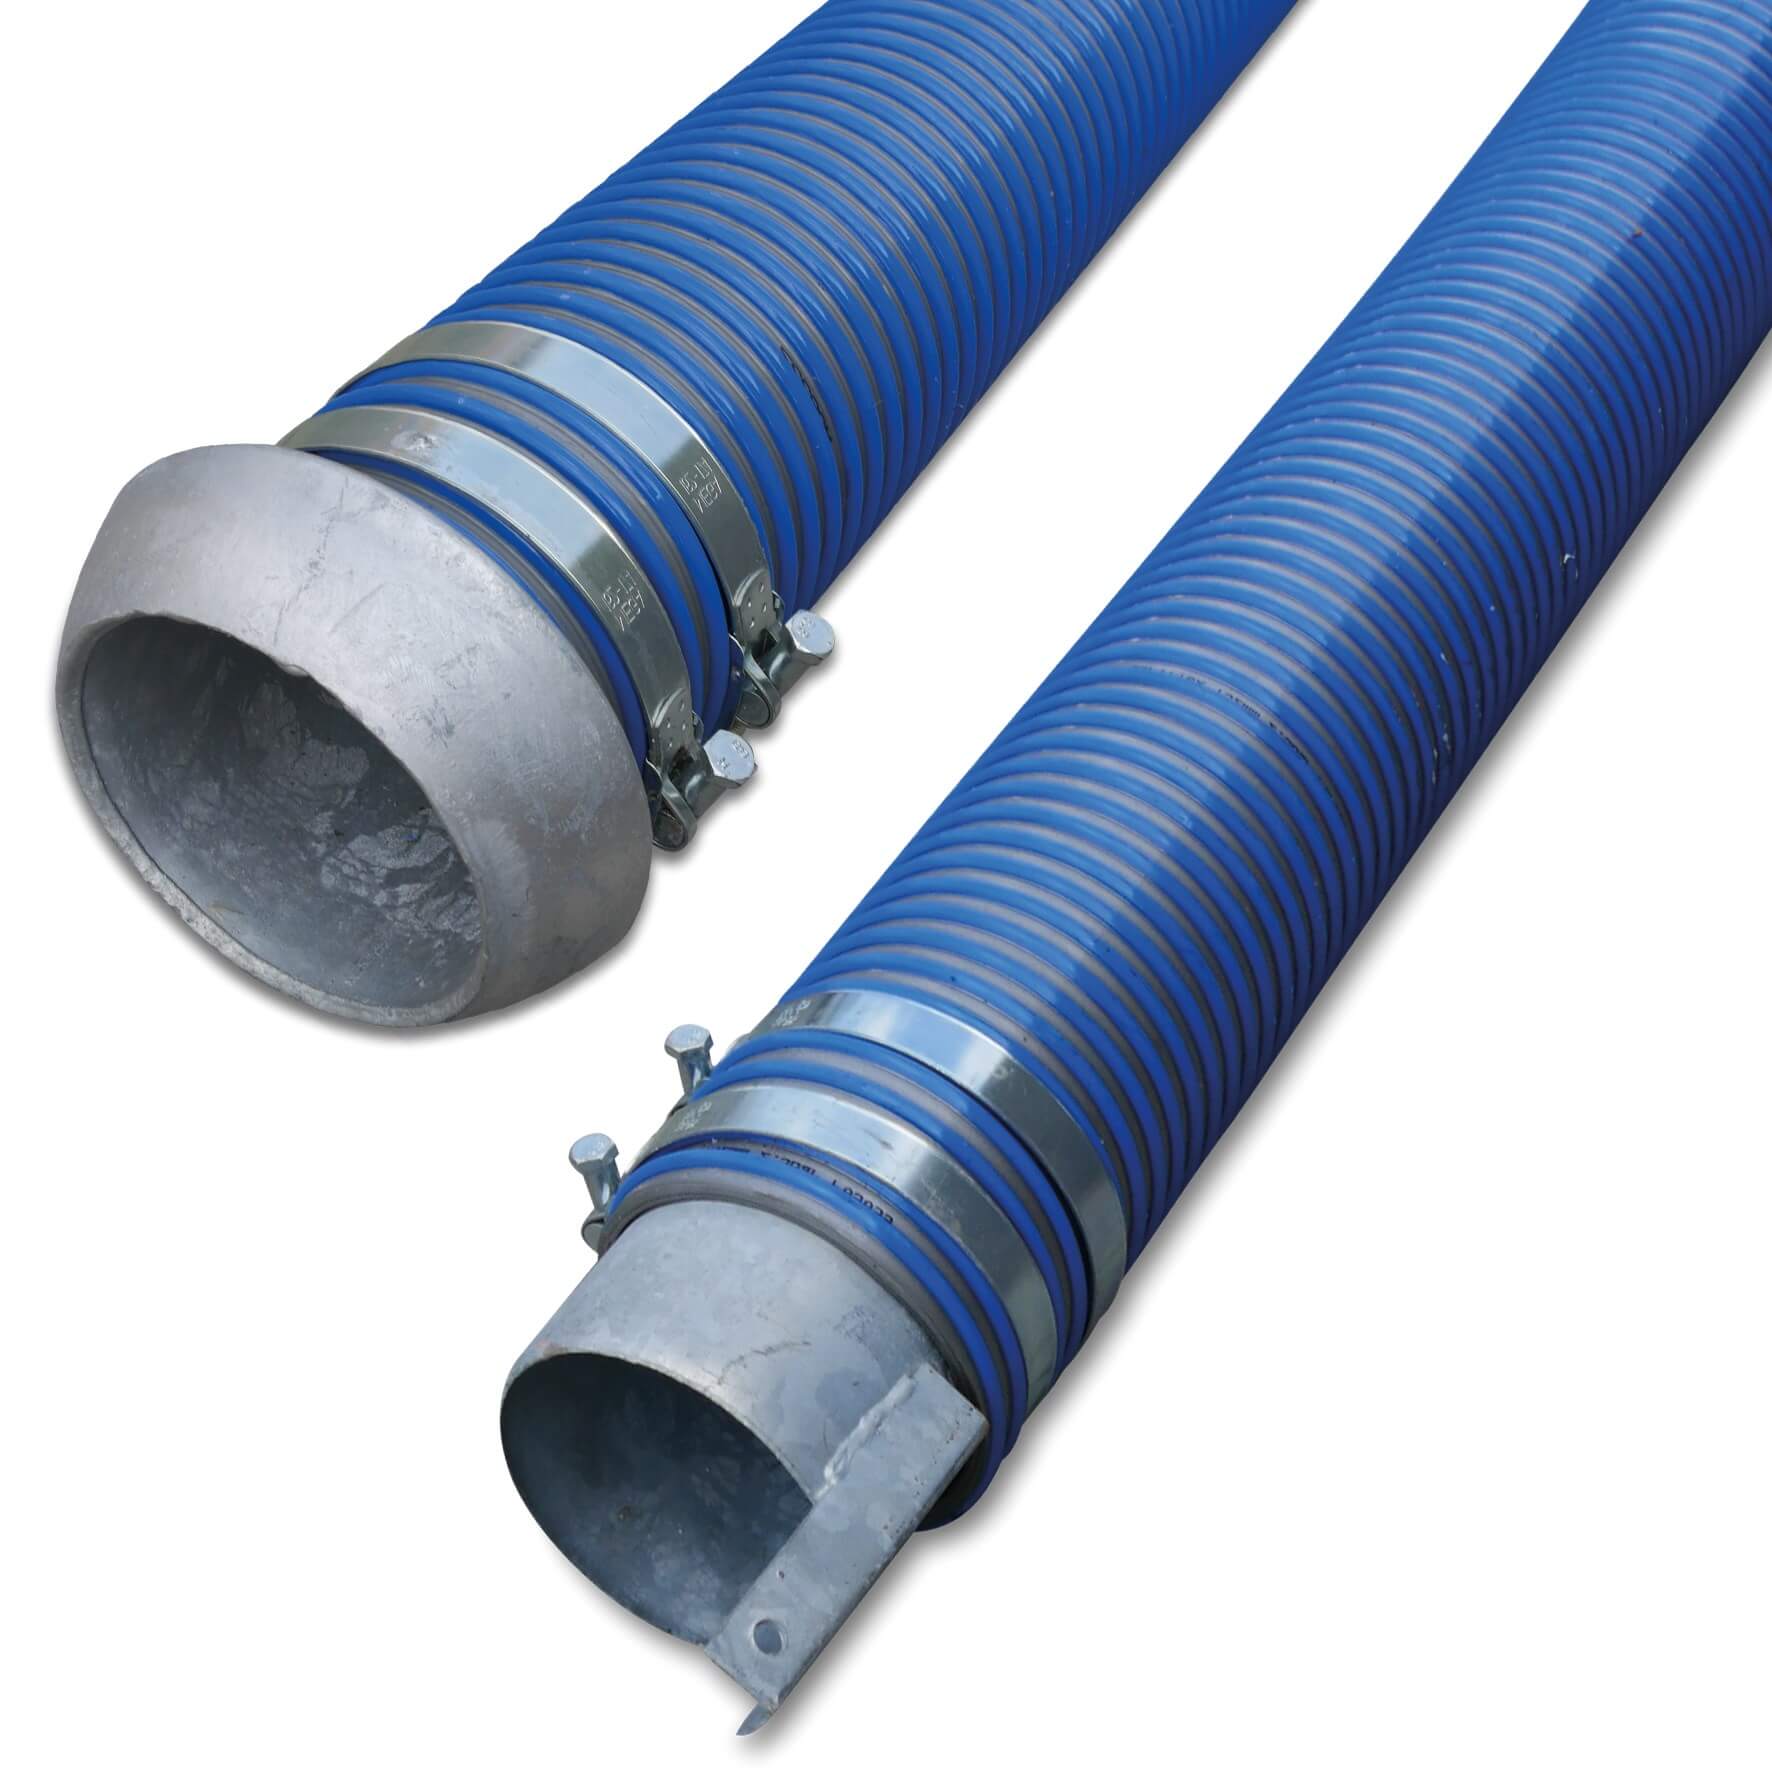 Spiraalslang PVC 152 mm V-deel Perrot x eindstuk met oog 2bar blauw/grijs 4m type Agriflex